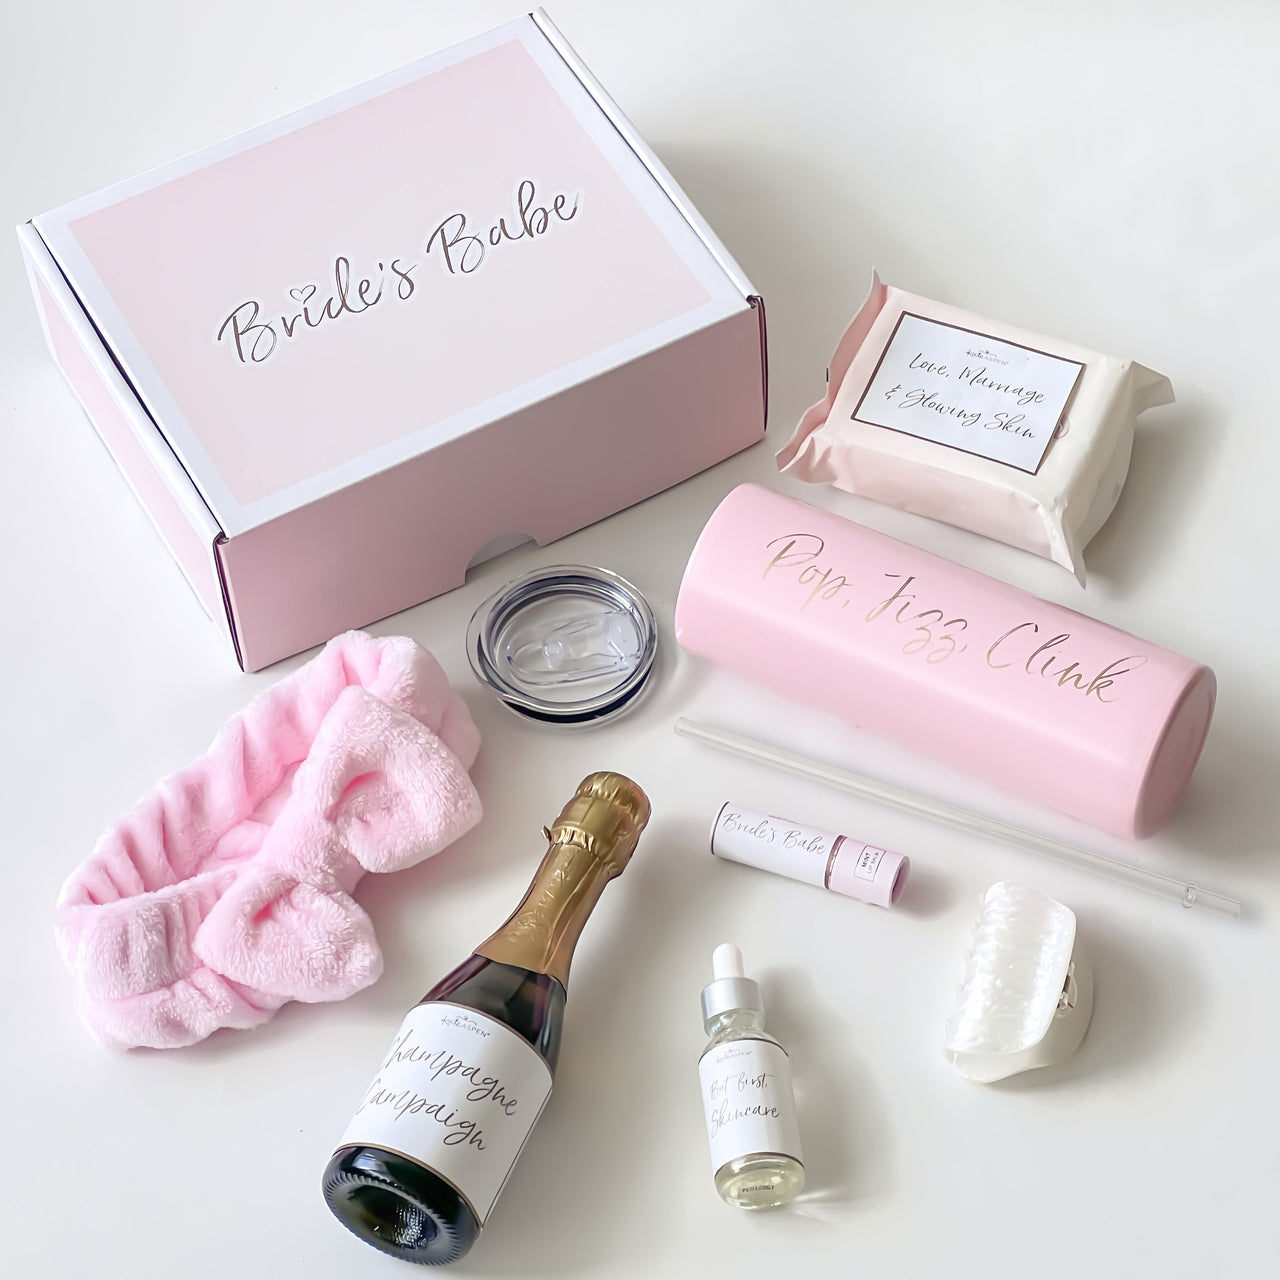 Cozy Bride Gift Box – Bride Savvy LLC -Your Bride Box